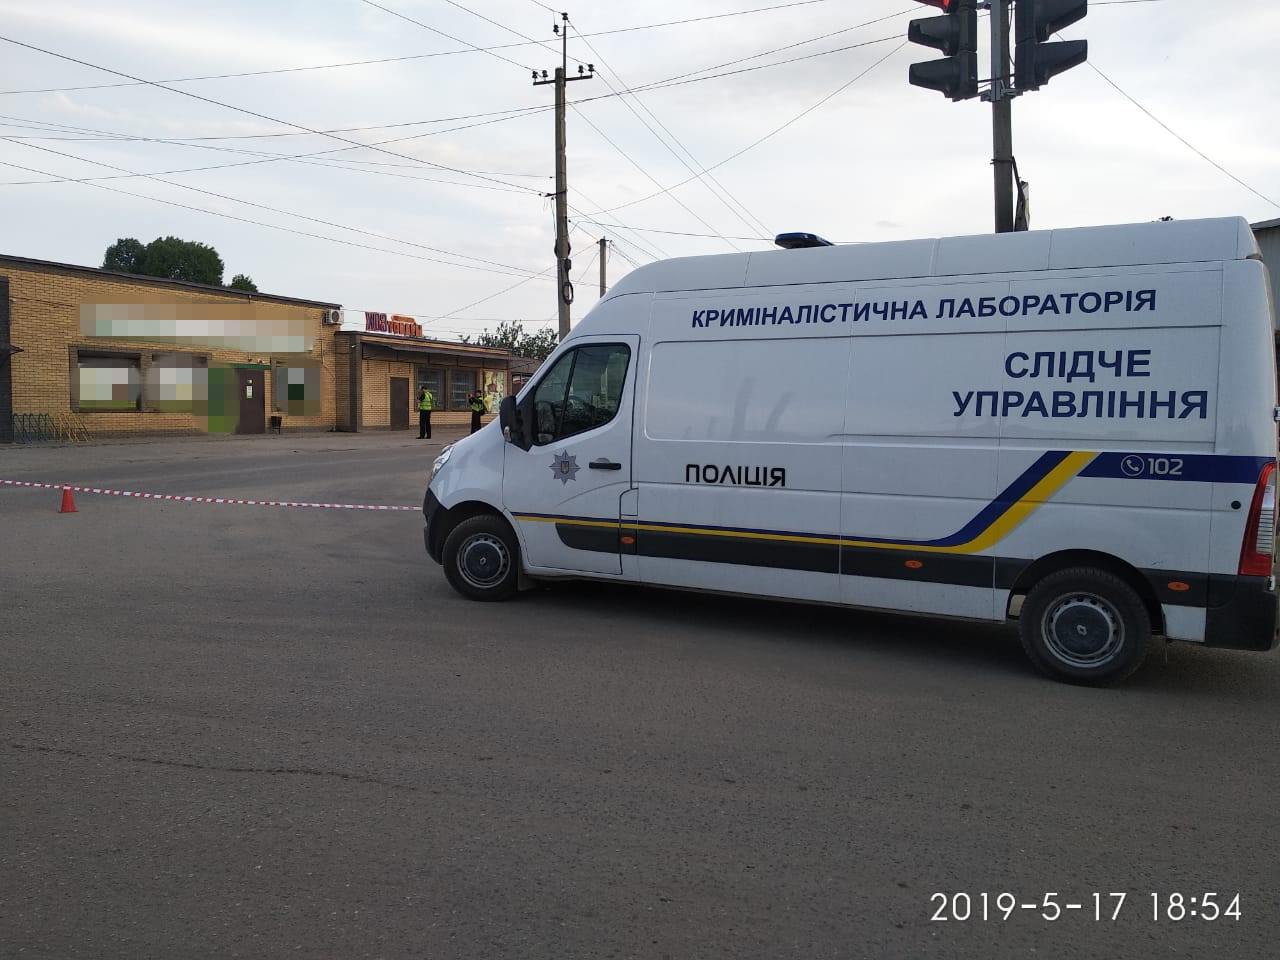 В филиале «ПриватБанка» в городе Старобельске результате подрыва гранаты погиб человек, фото: Национальная полиция